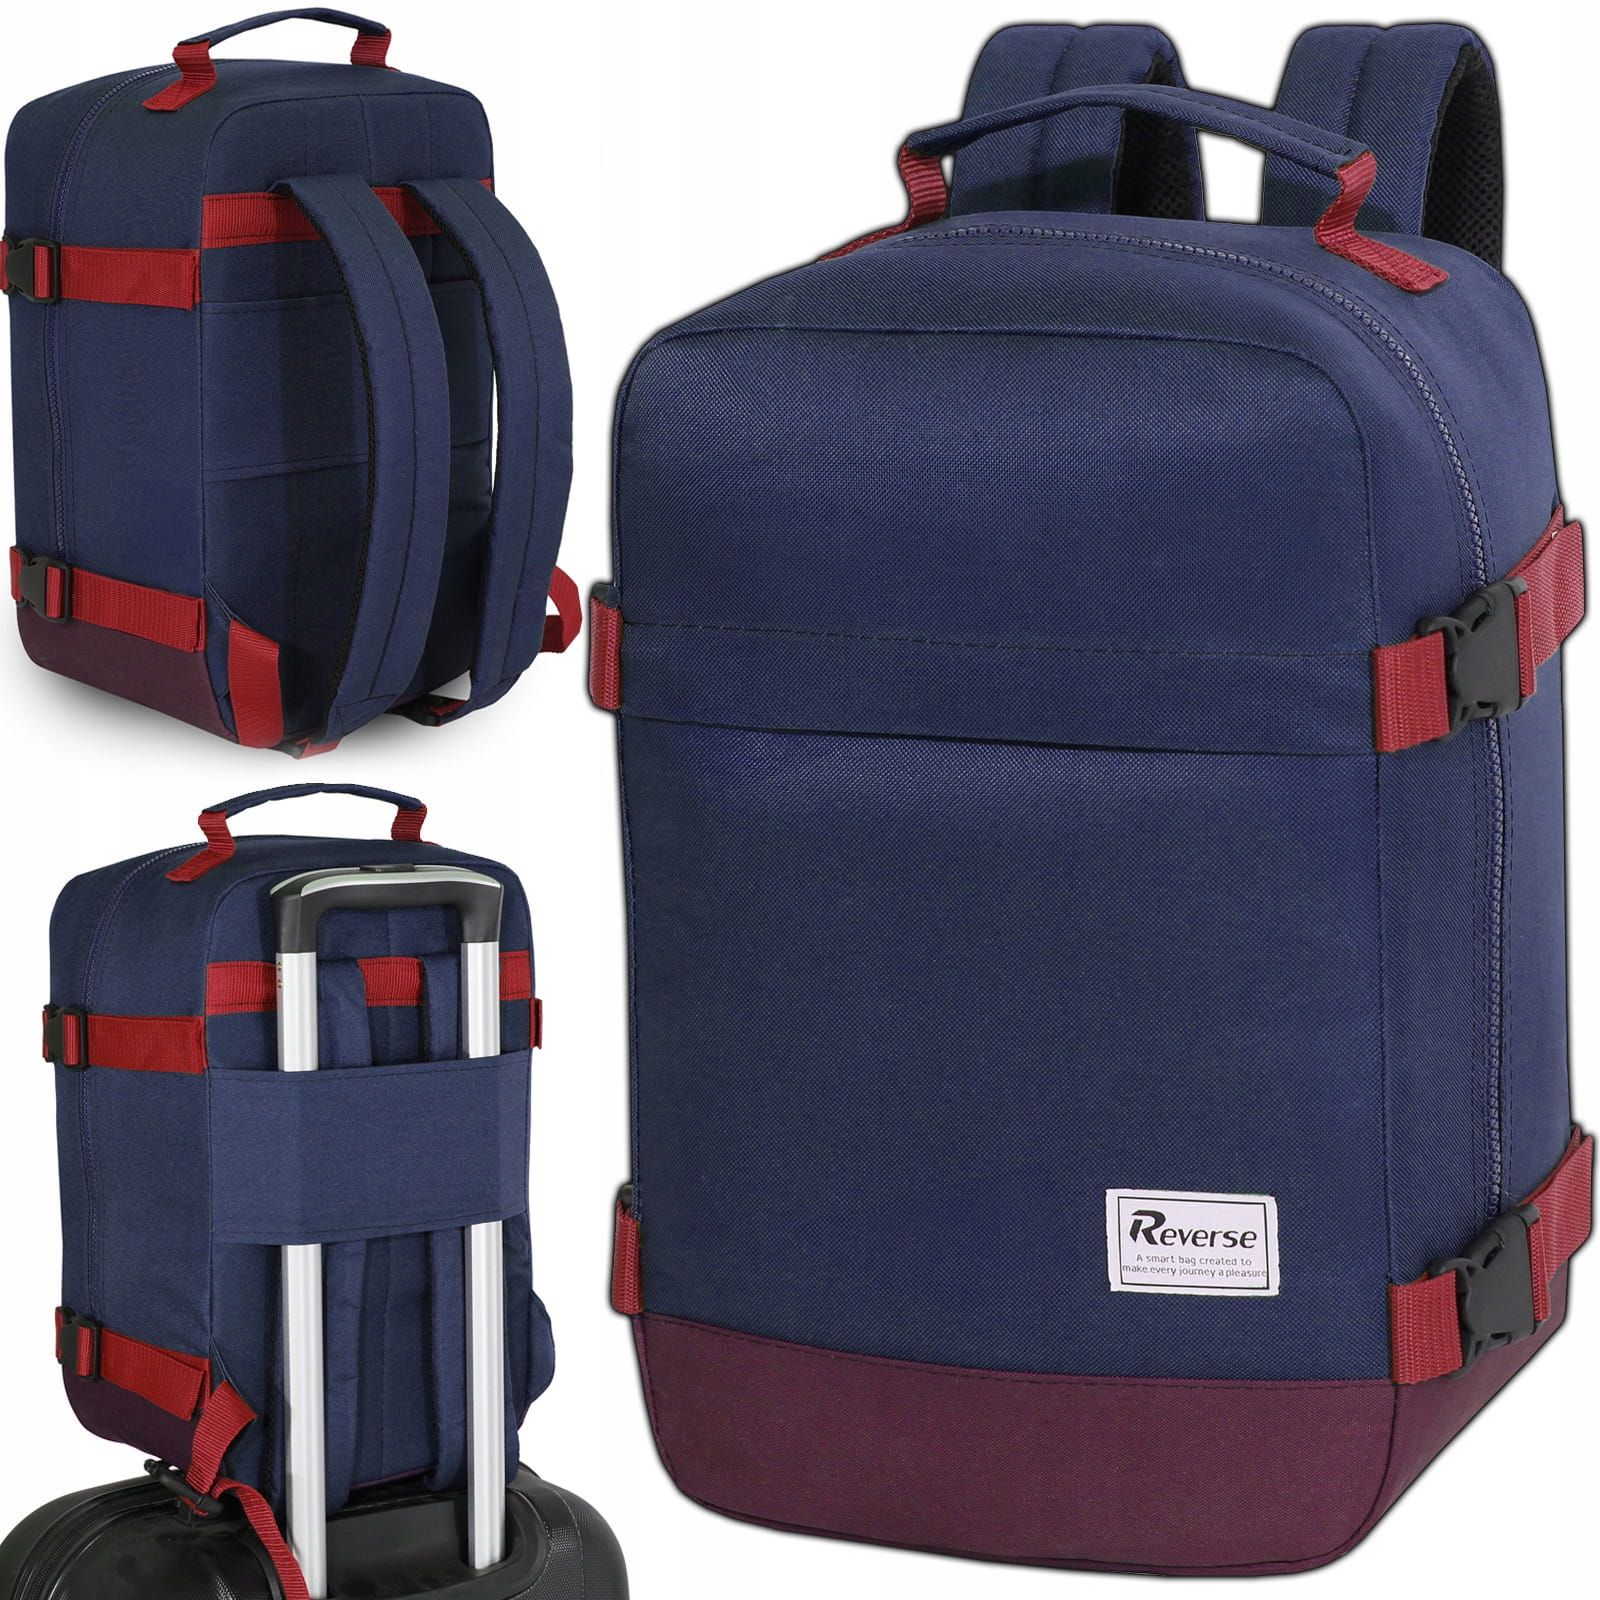 Reverse Příruční zavazadlo - batoh pro RYANAIR 2069 40x25x20 BLUE